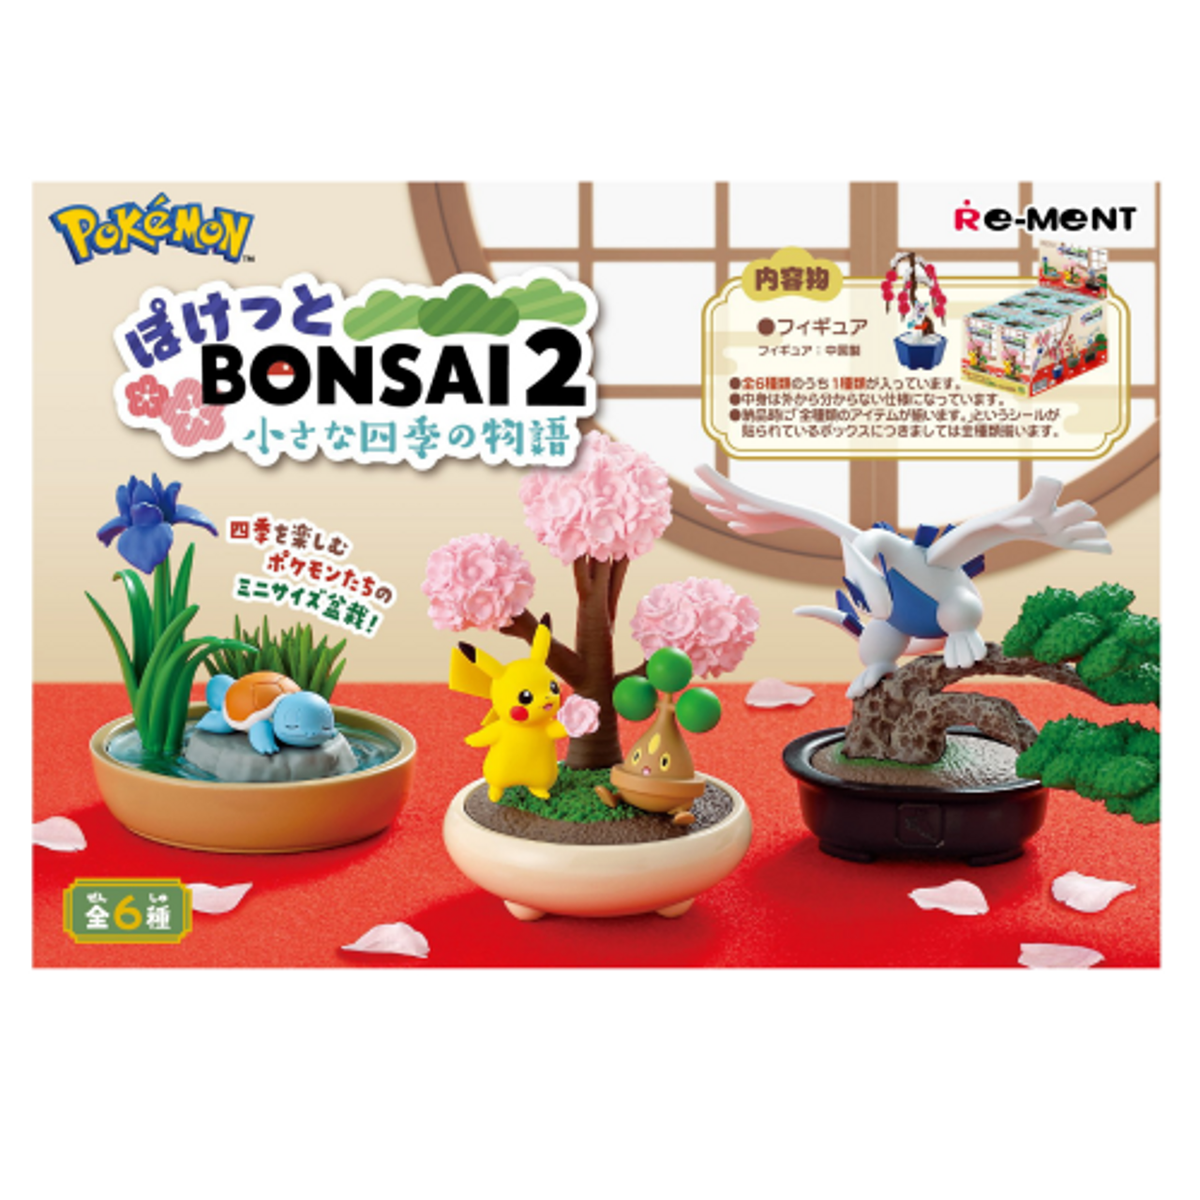 Re-Ment Pokemon Pocket Bonsai 2-Single Box (Random)-Re-Ment-Ace Cards &amp; Collectibles